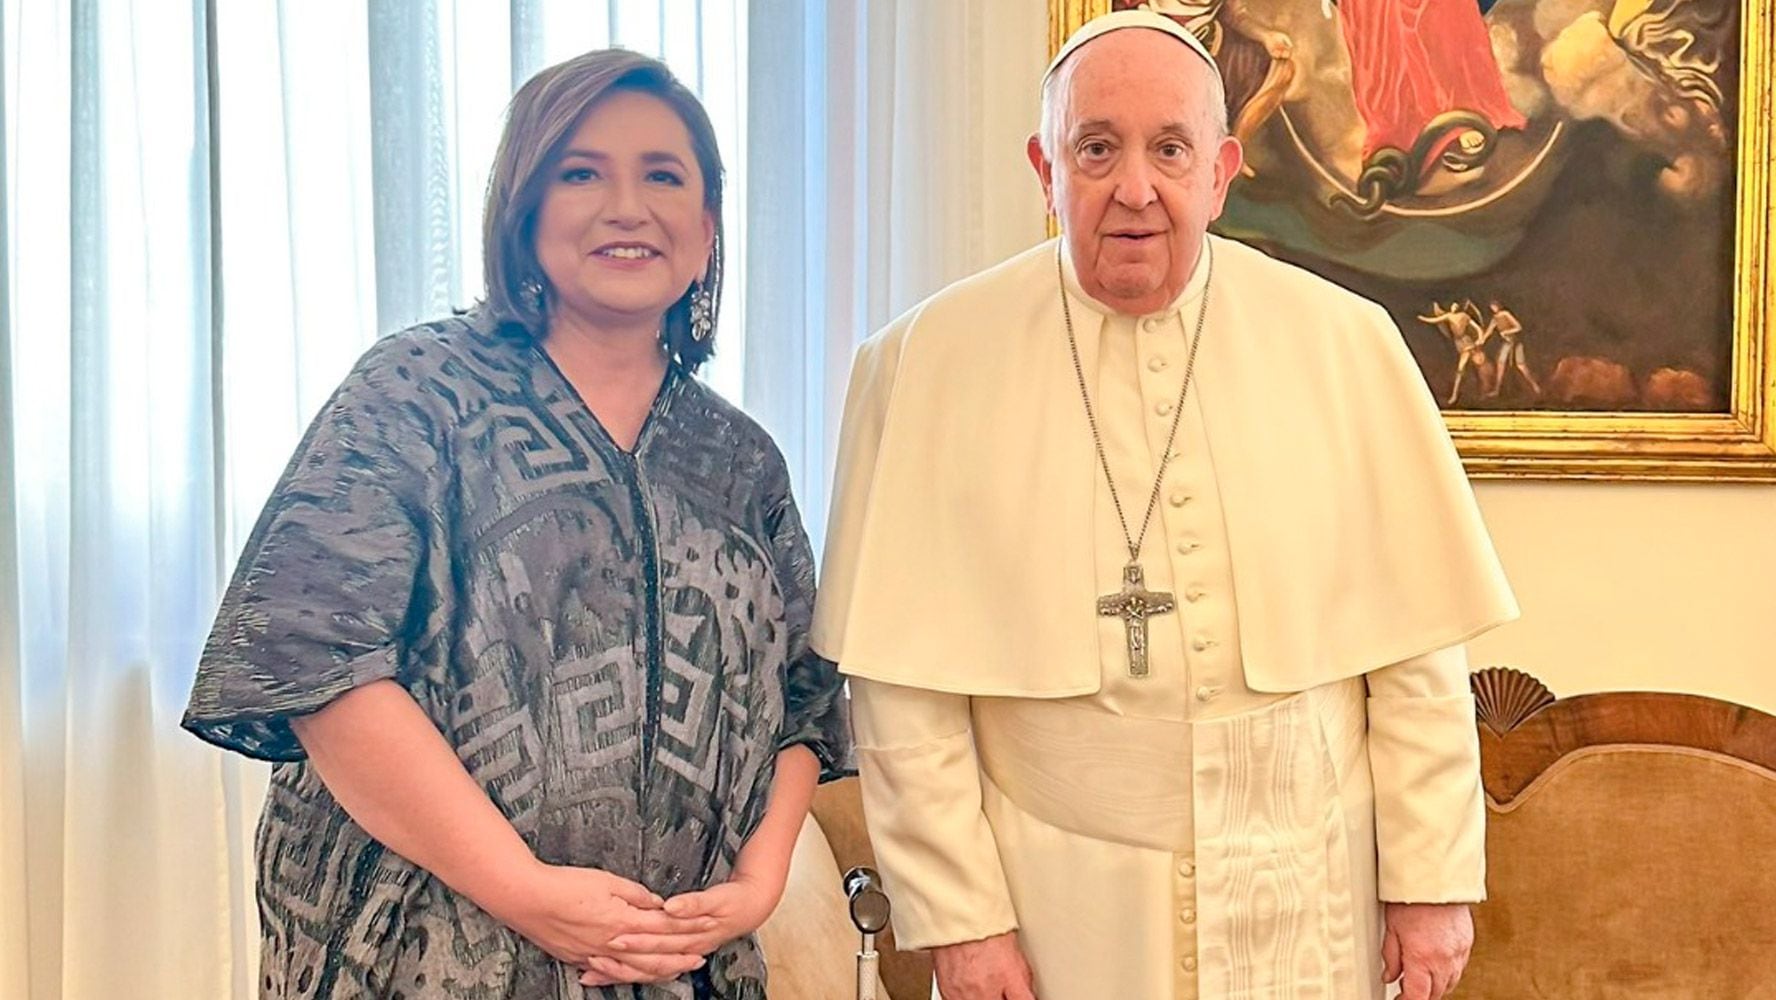 Hija de Xóchitl Gálvez revela más detalles de la reunión con el Papa Francisco: ‘Hubo muchas risas’